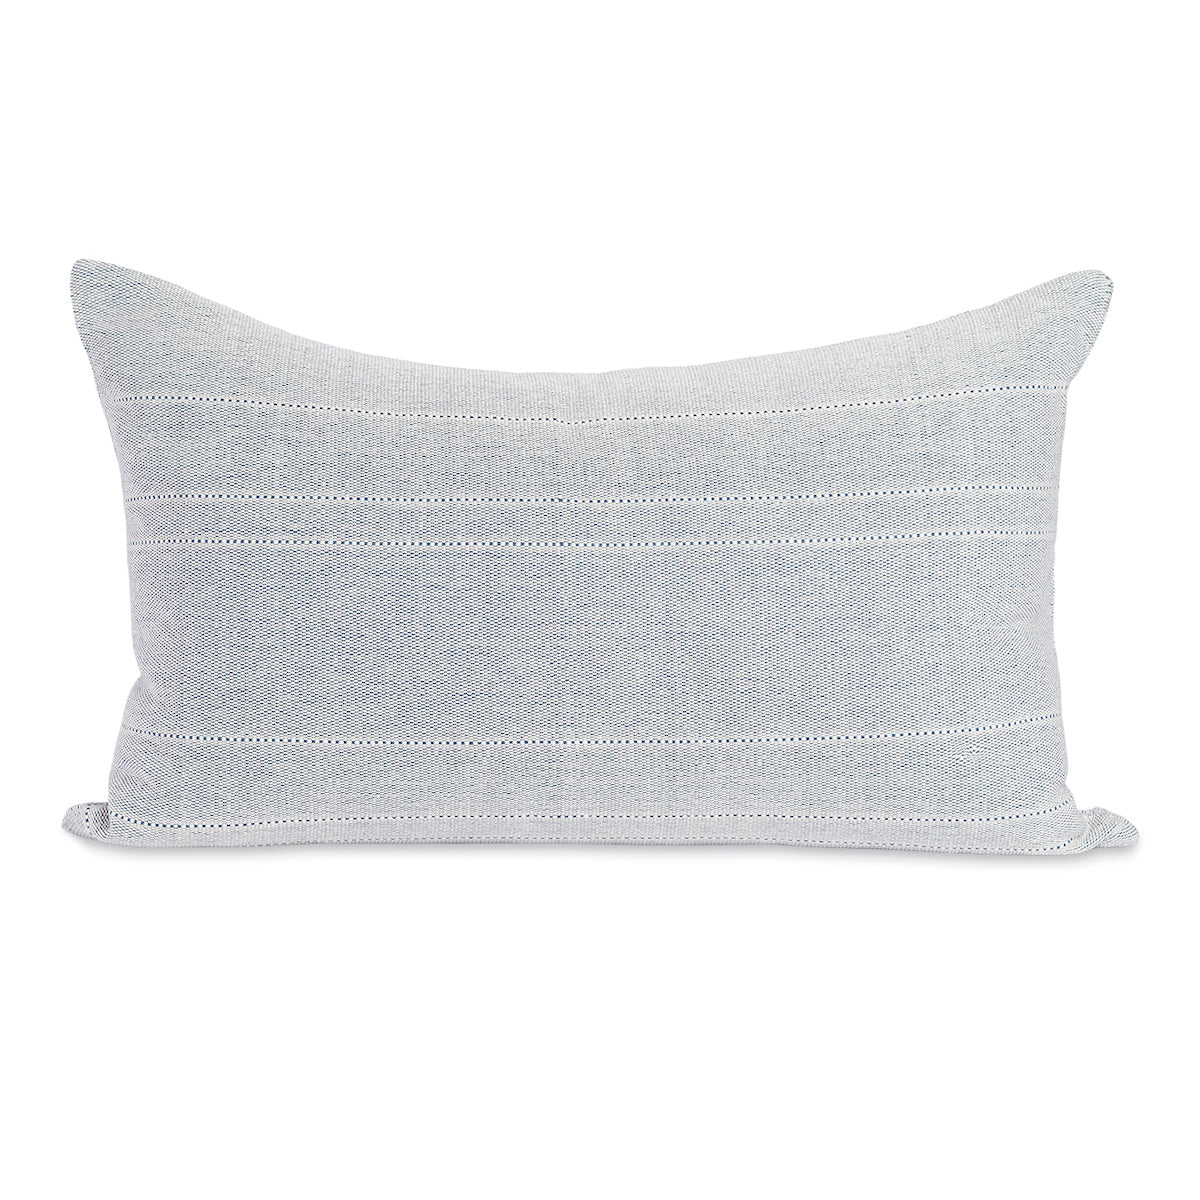 Bogota Lumbar Pillow - Blue